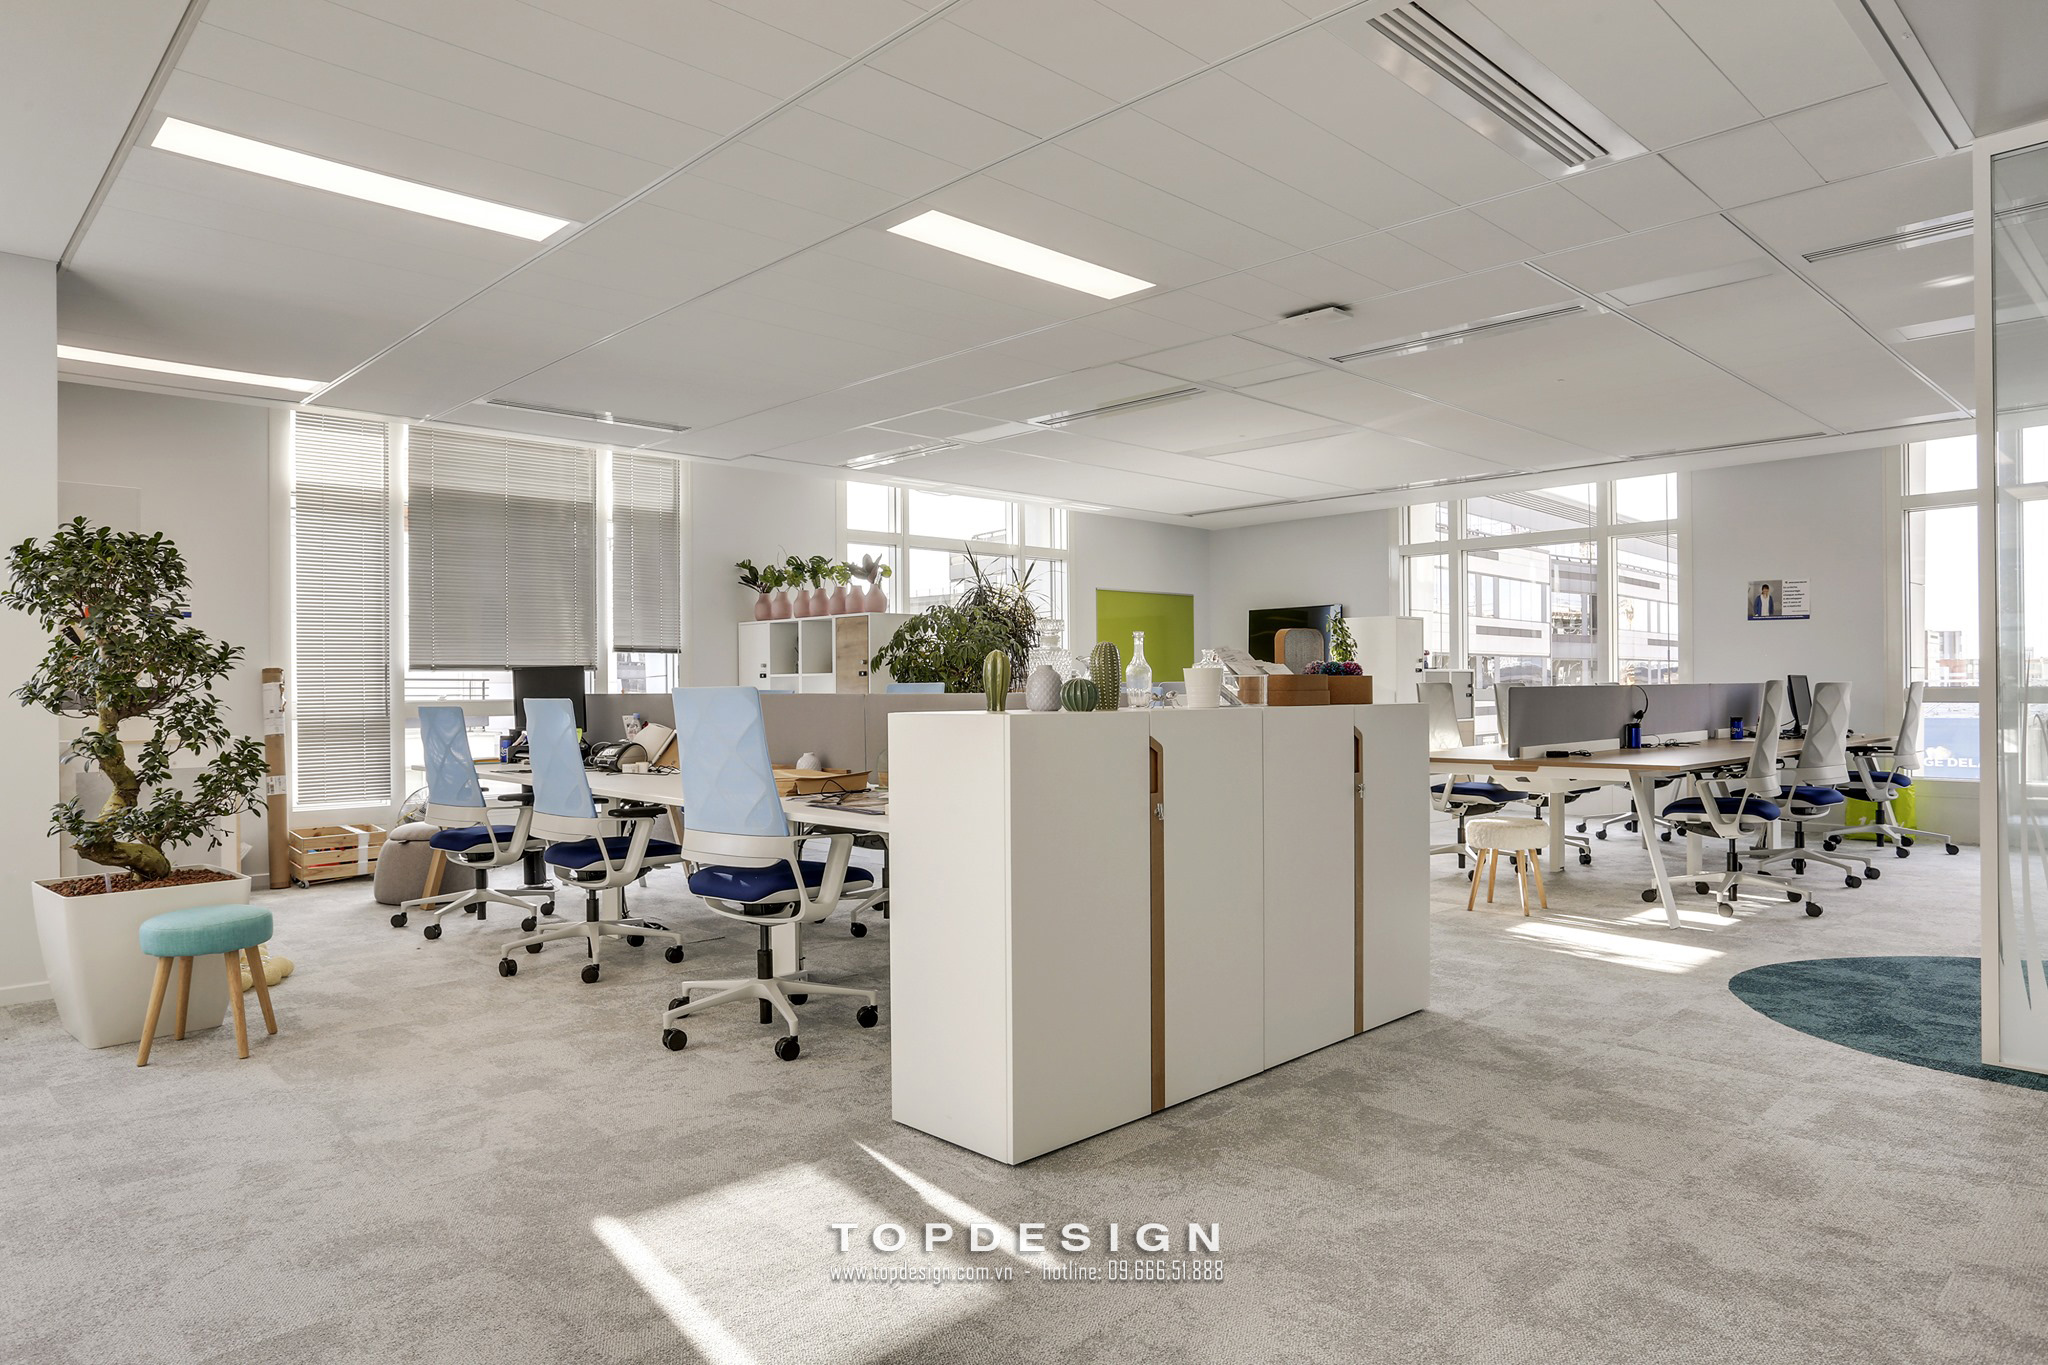 2.Thiết kế xây dựng văn phòng rộng rãi, chuyên nghiệp_TOPDESIGN